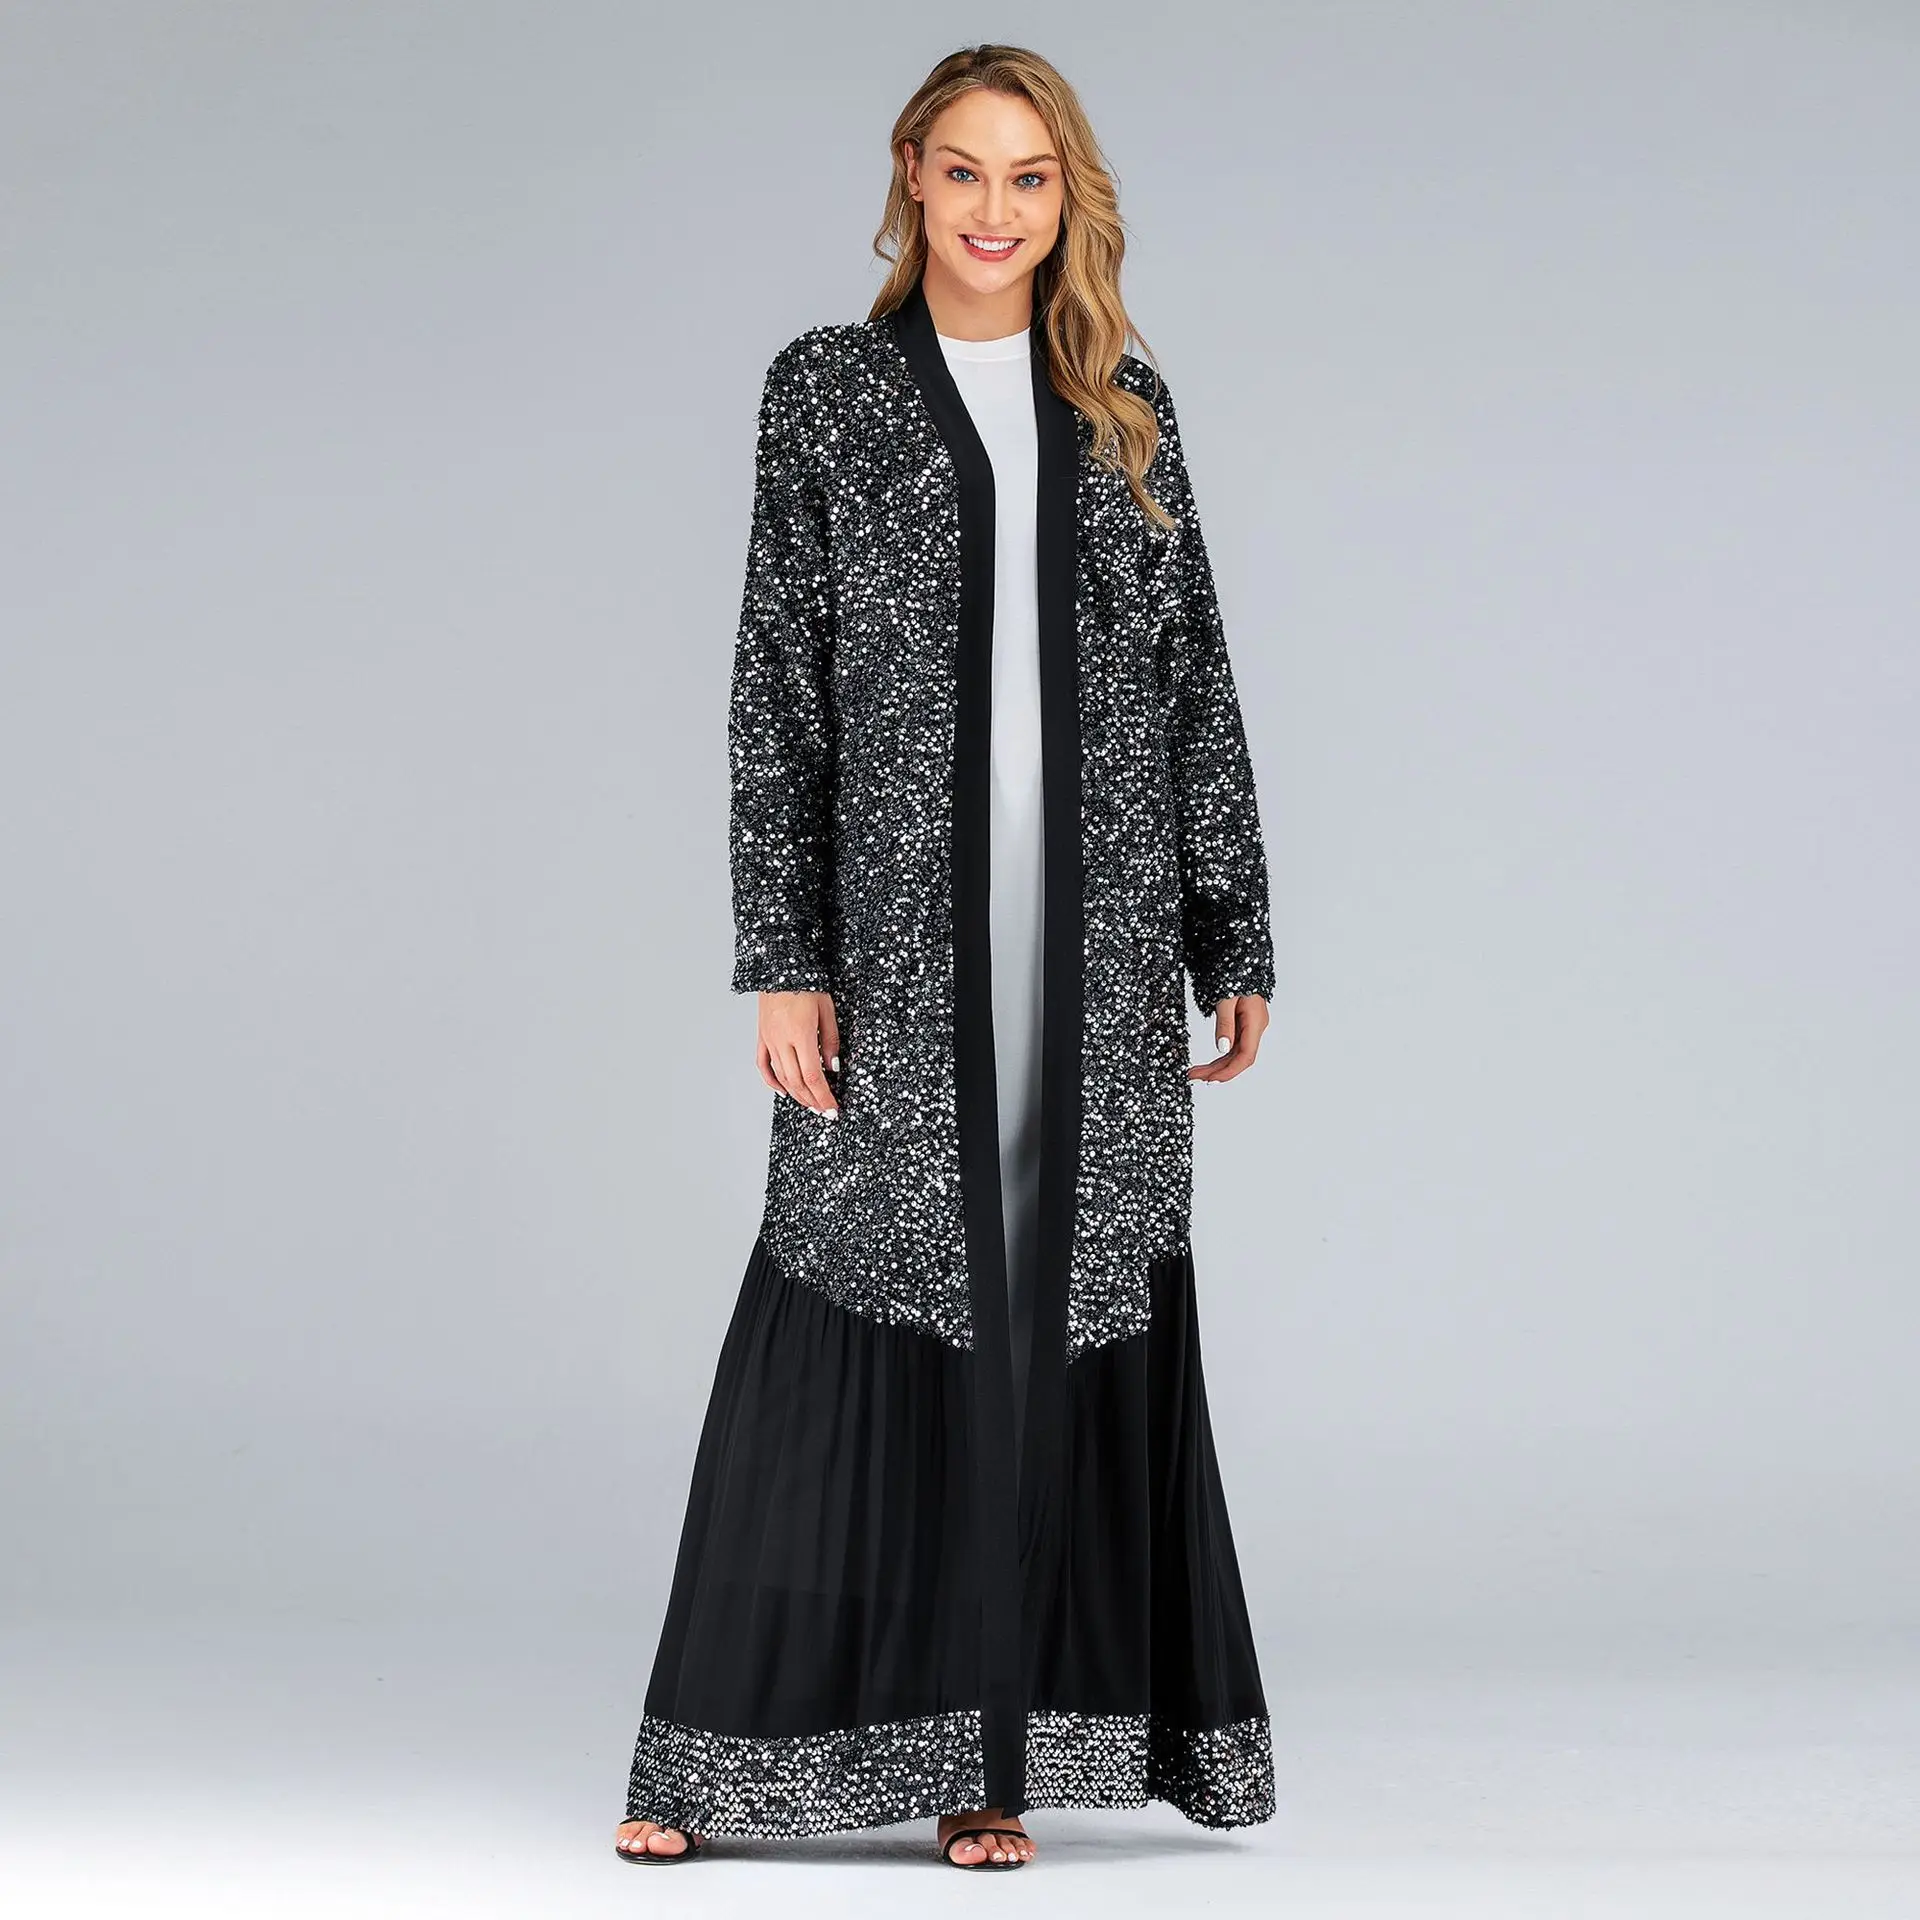 

Caftan марокканский кафтан Дубай турецкий ислам одежда для женщин черные блестки открытая абайя кимоно мусульманское платье Abayas хиджаб плать...